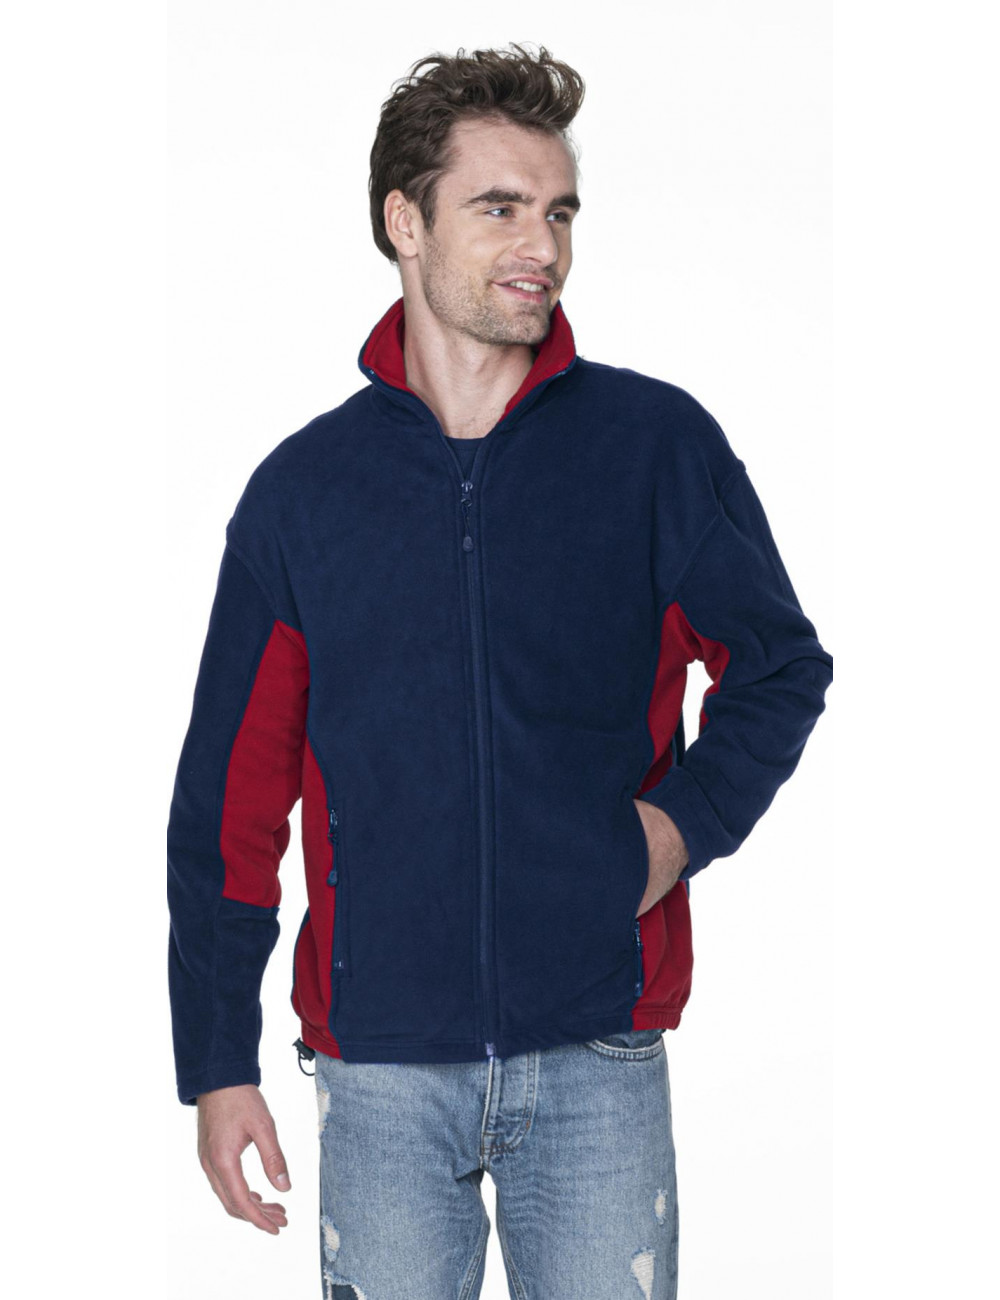 Swing-Sweatshirt für Herren, Marineblau/Dunkelrot, Promostars